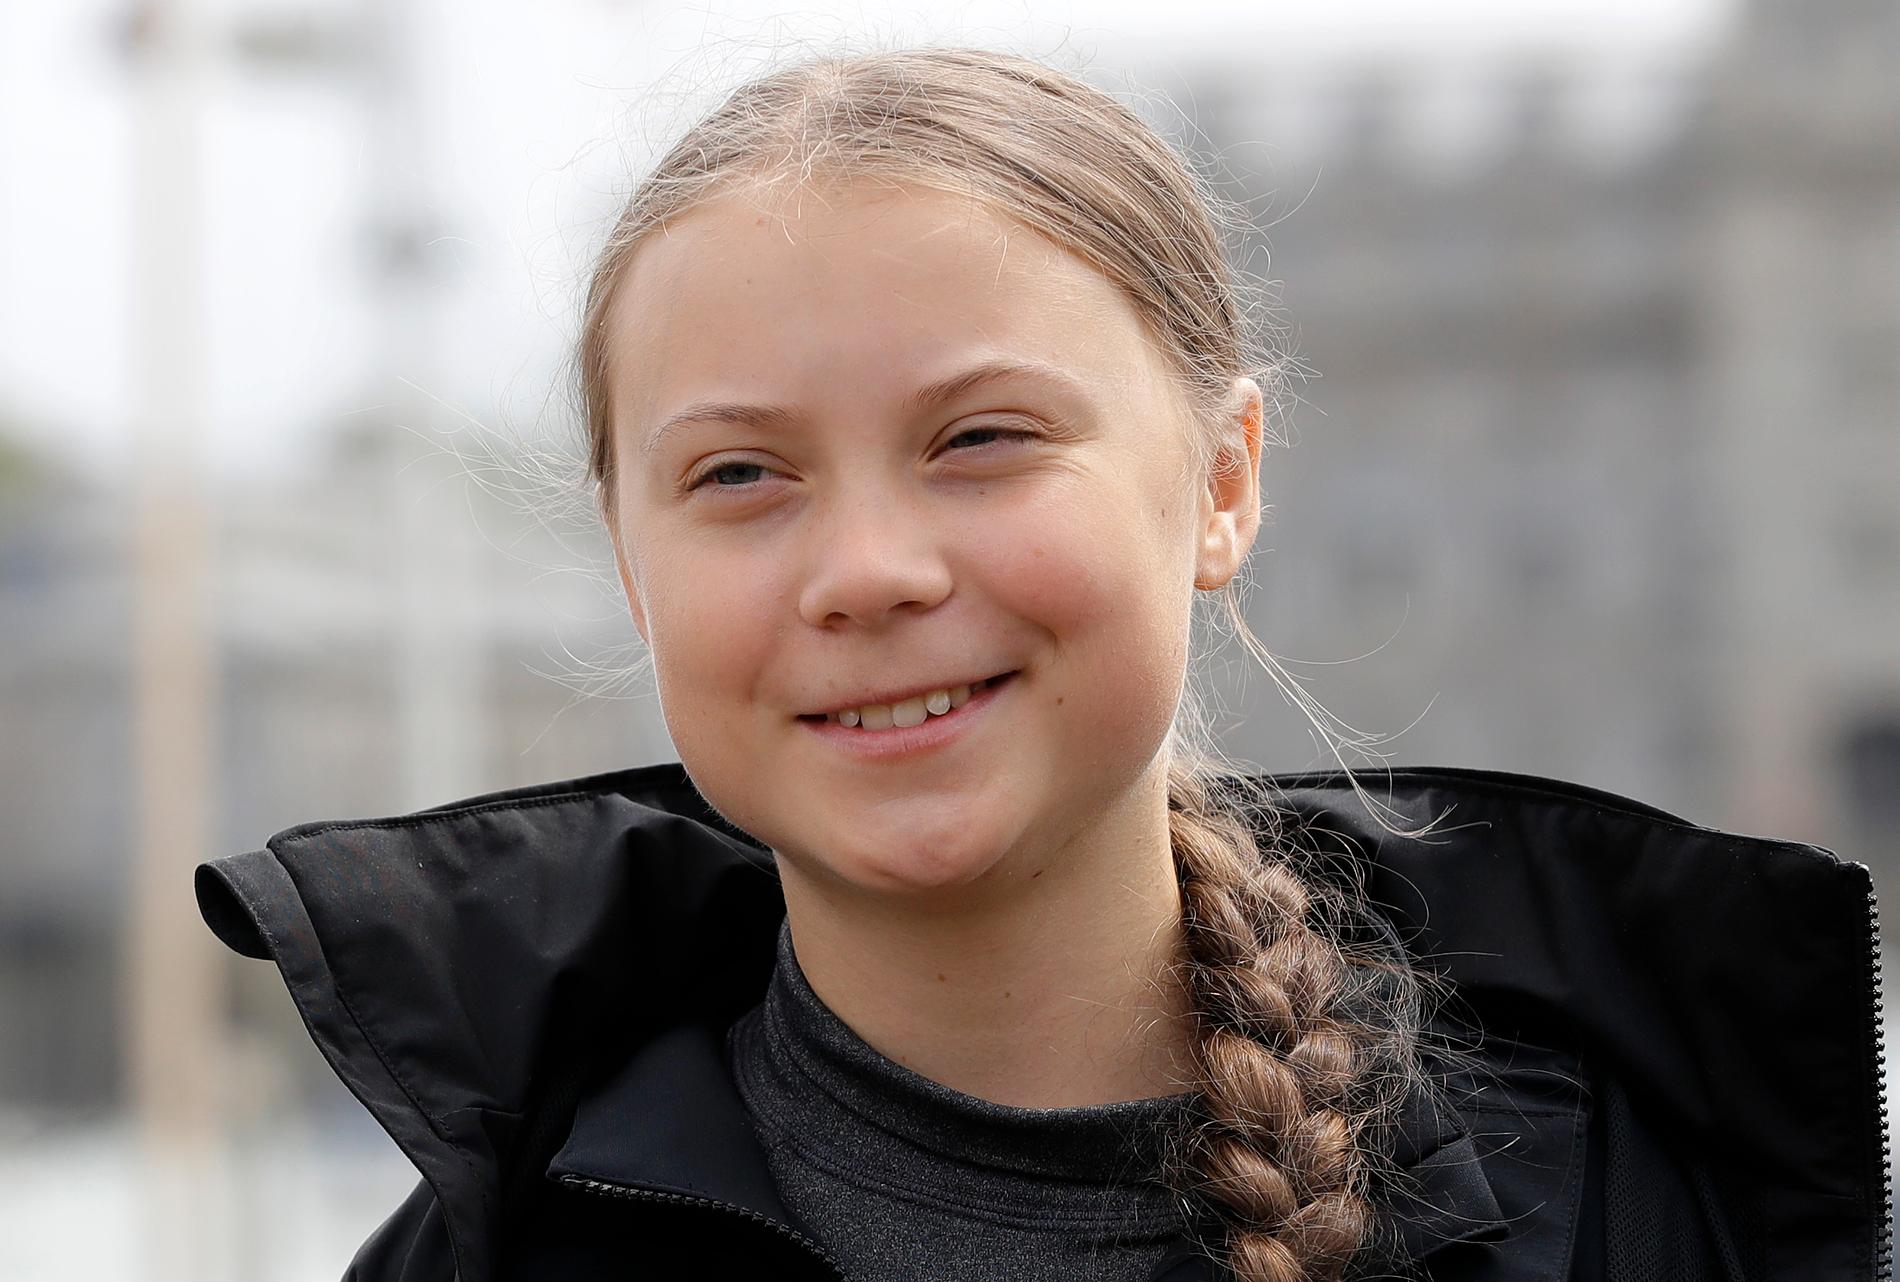 Klimataktivisten Greta Thunberg har fått stort utrymme i medierna det senaste året. Fortfarande är dock endast omkring en tredjedel av dem som syns och hörs i nyheterna kvinnor, visar en ny mätning.